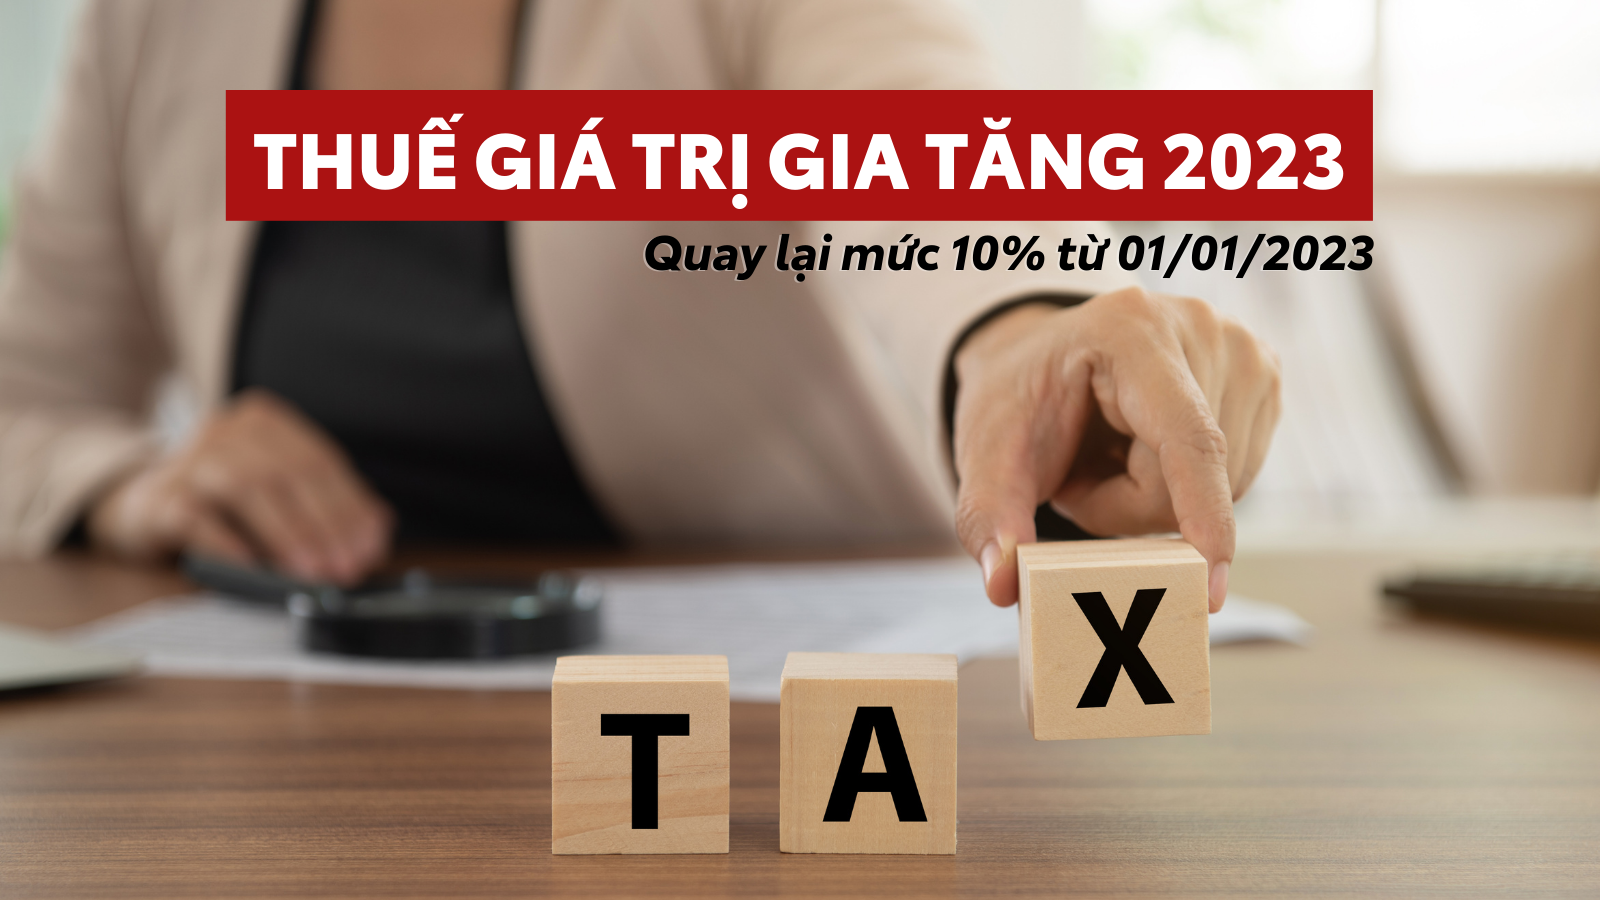 Thông báo về chuyển đổi thuế VAT về mức 10% từ 01/01/2023